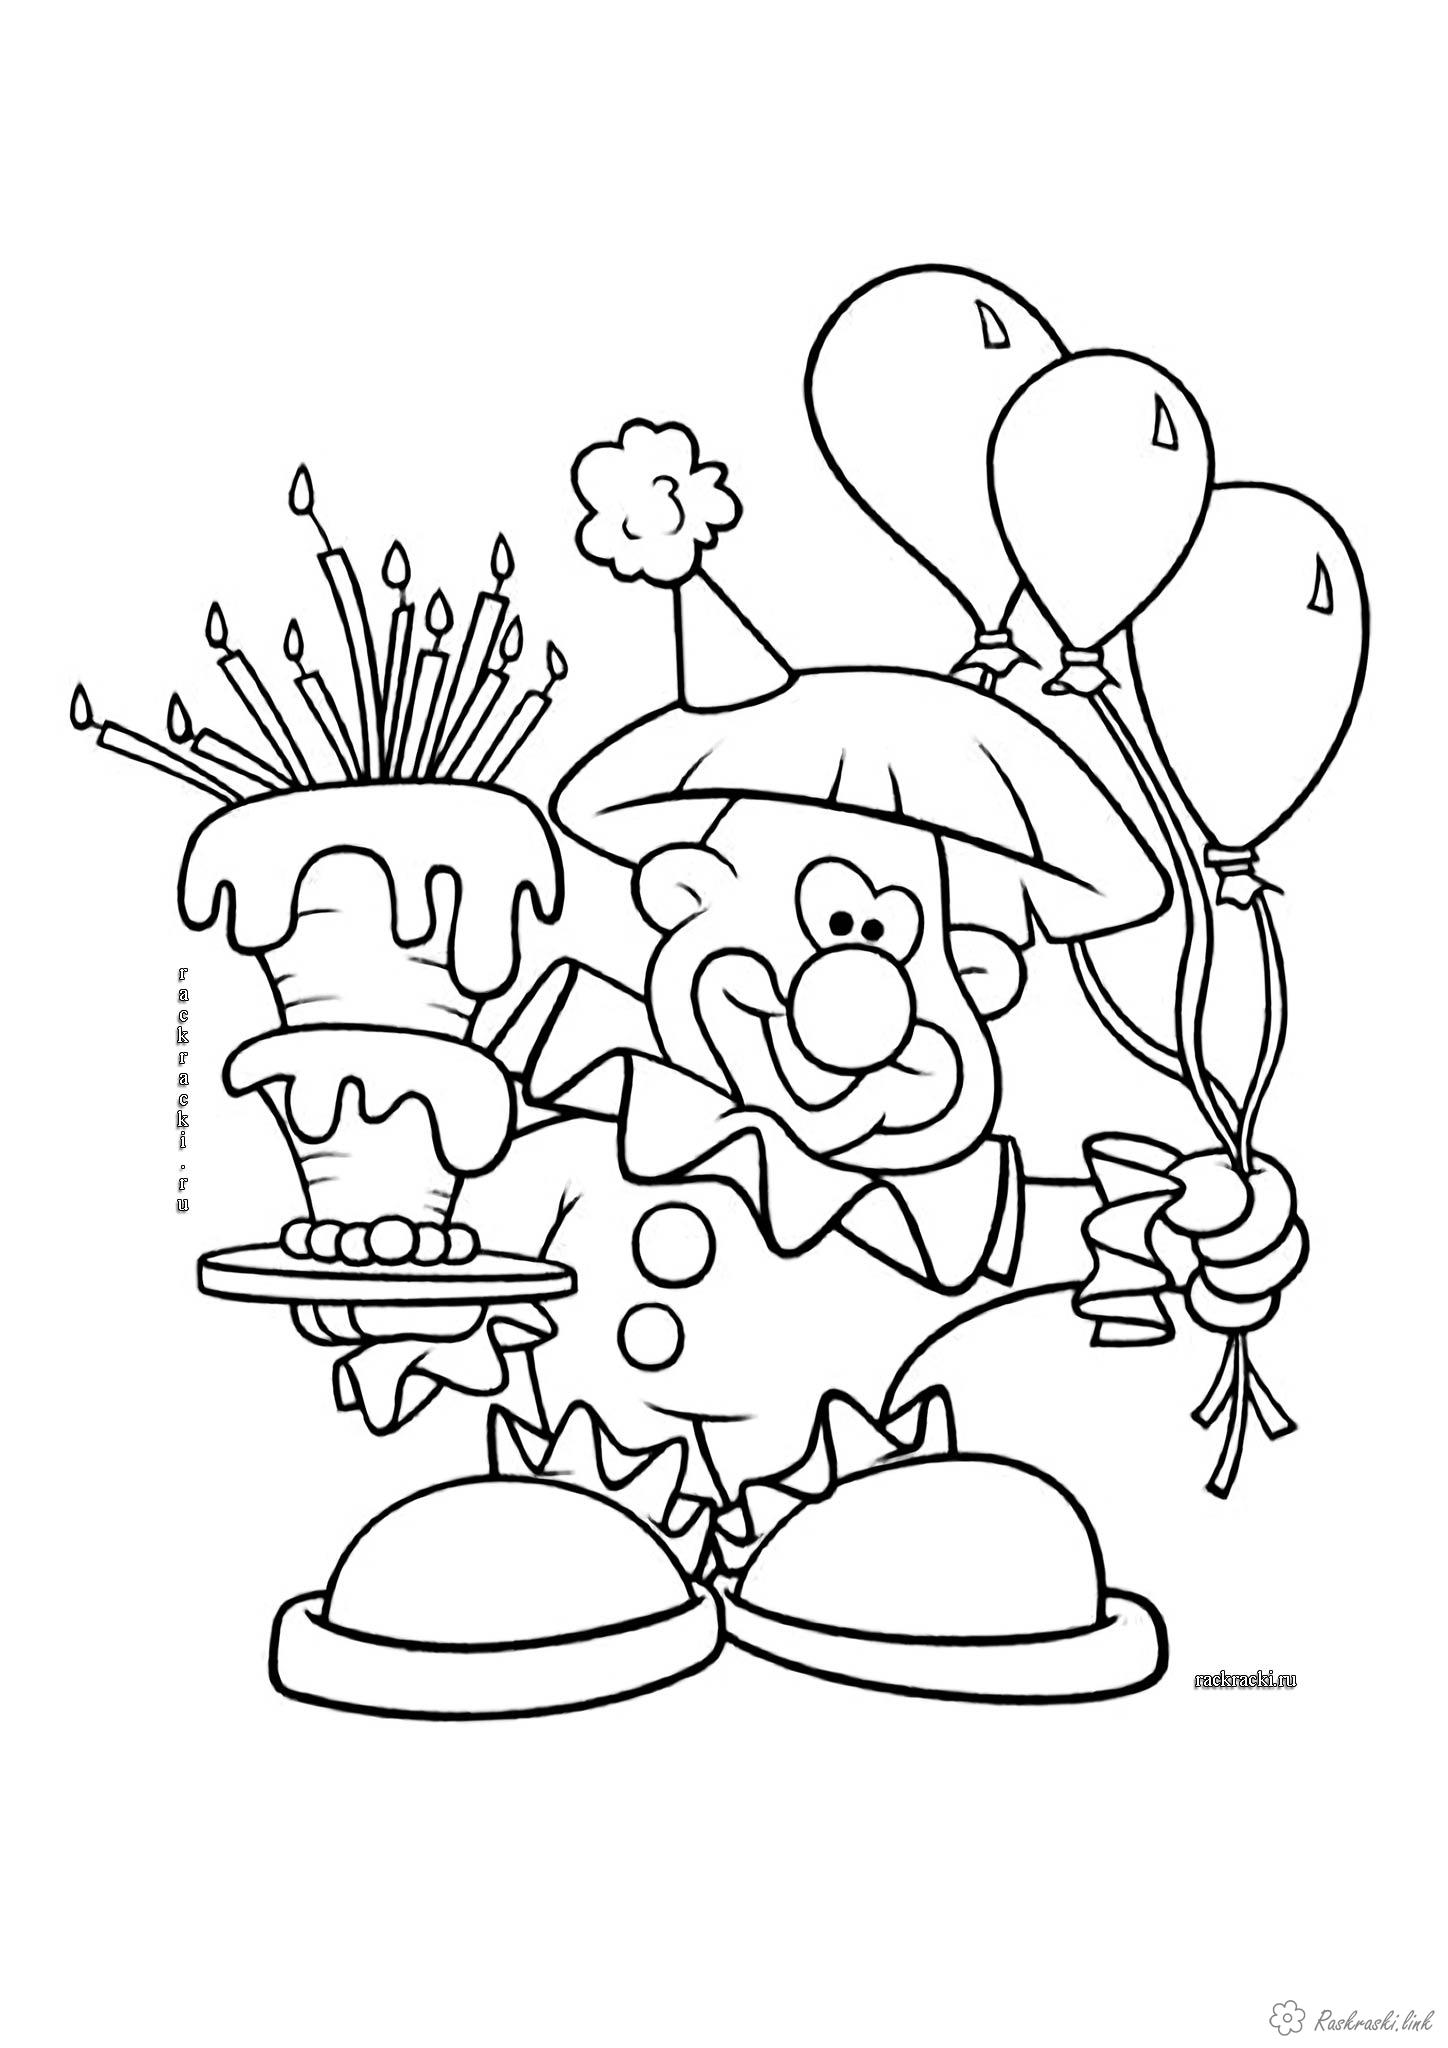 Раскраски Торты и пирожные  Смешной клоун, раскраска, день рождения, торт